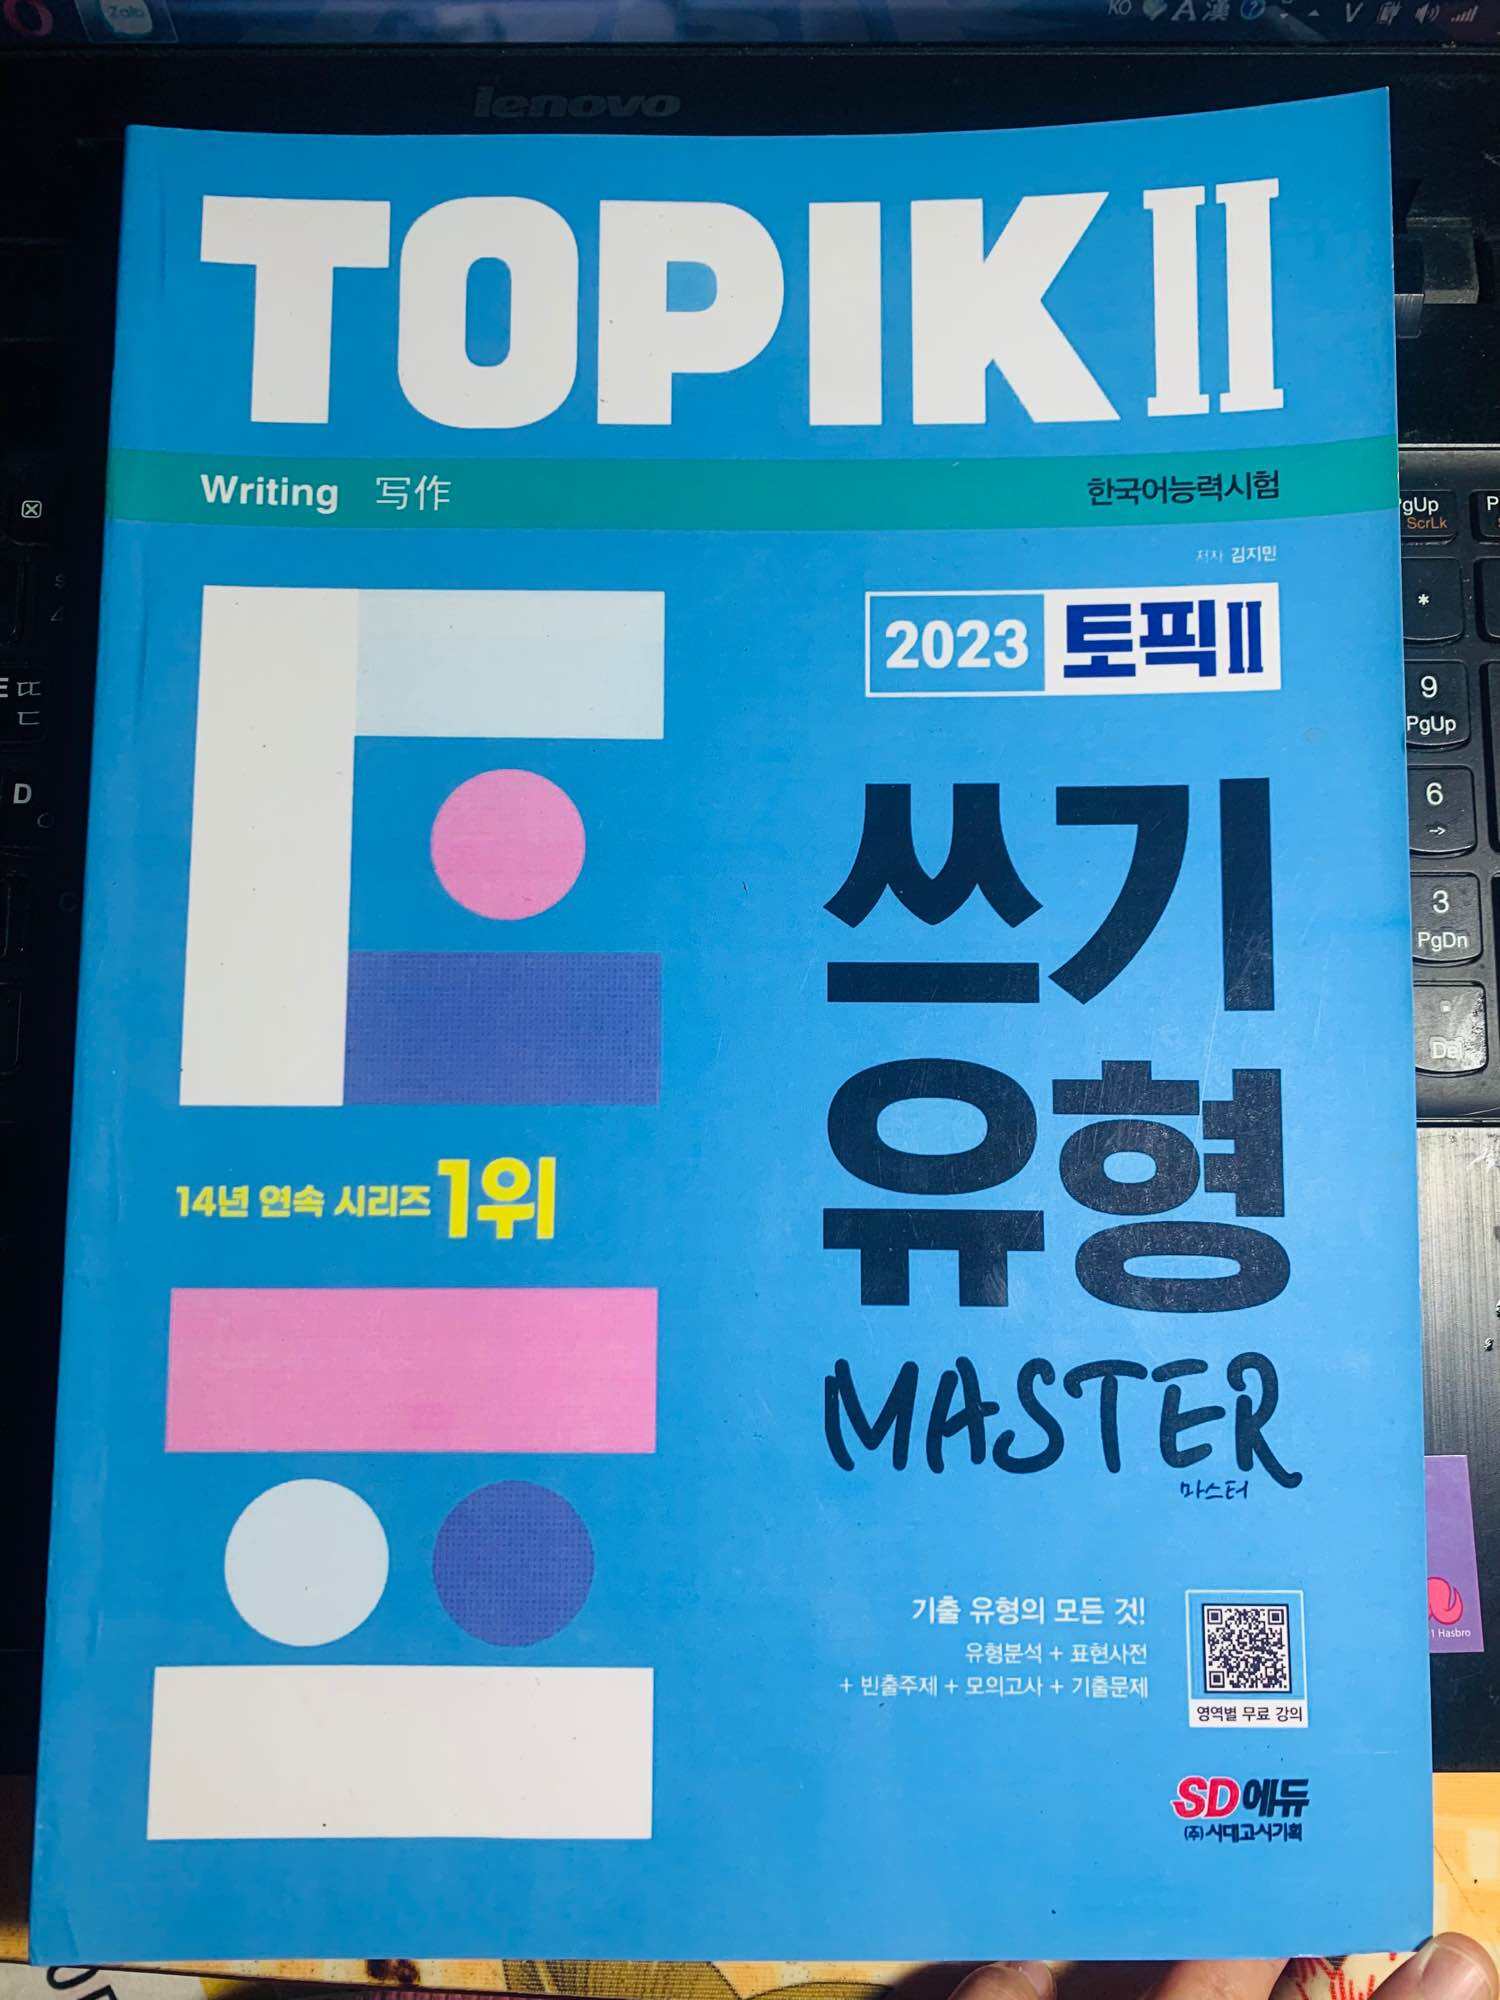 Master topik II 2023 - hướng dẫn viết  cập nhật xu hướng mới nhất - đen